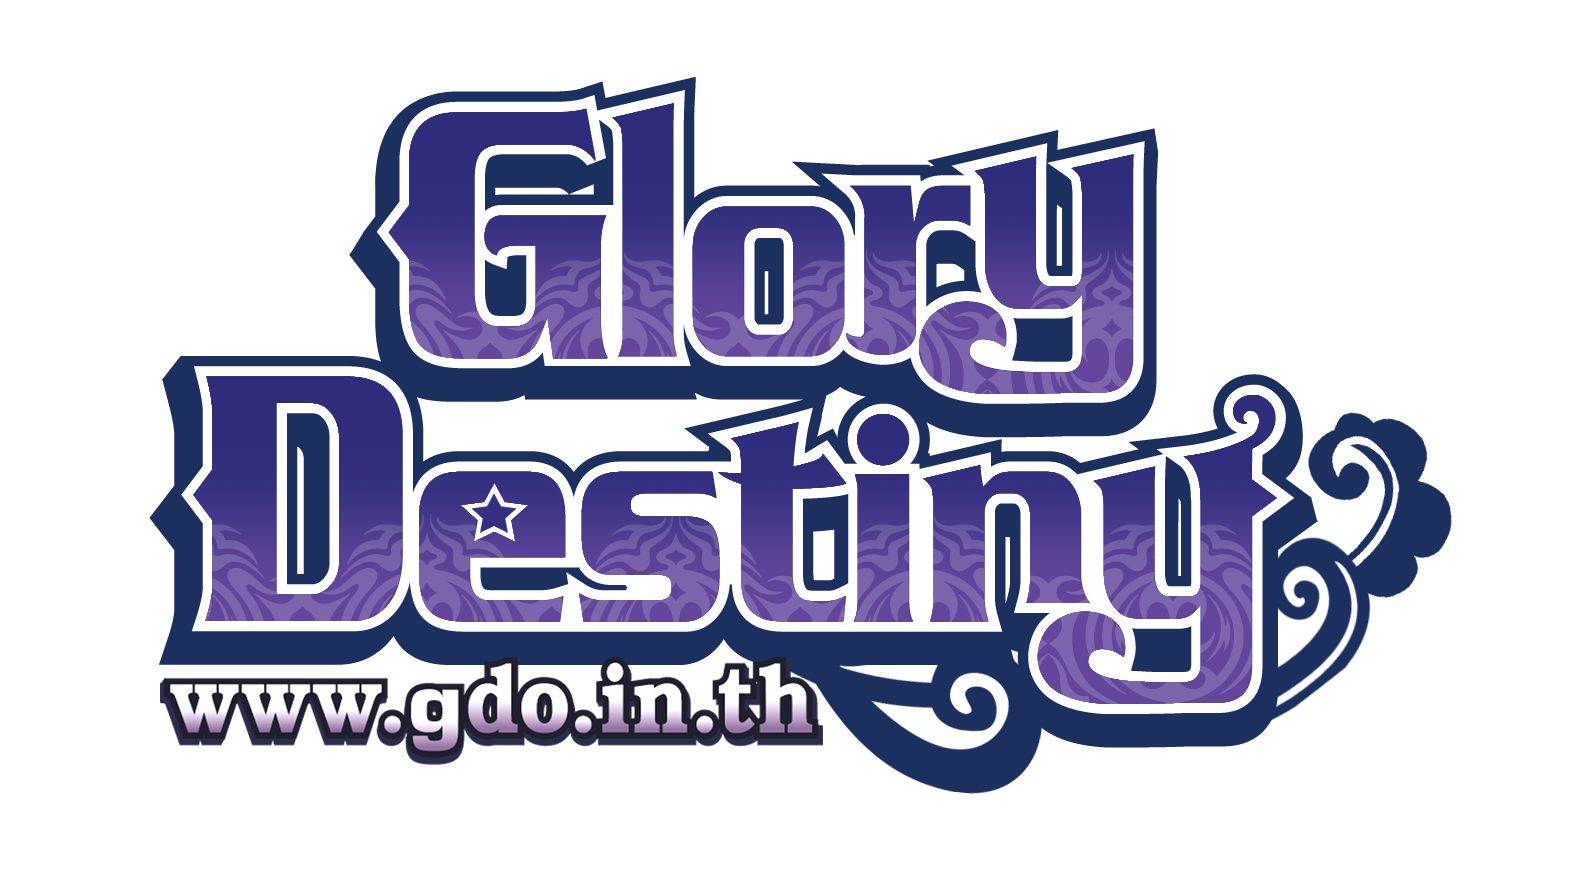 Glory Destiny